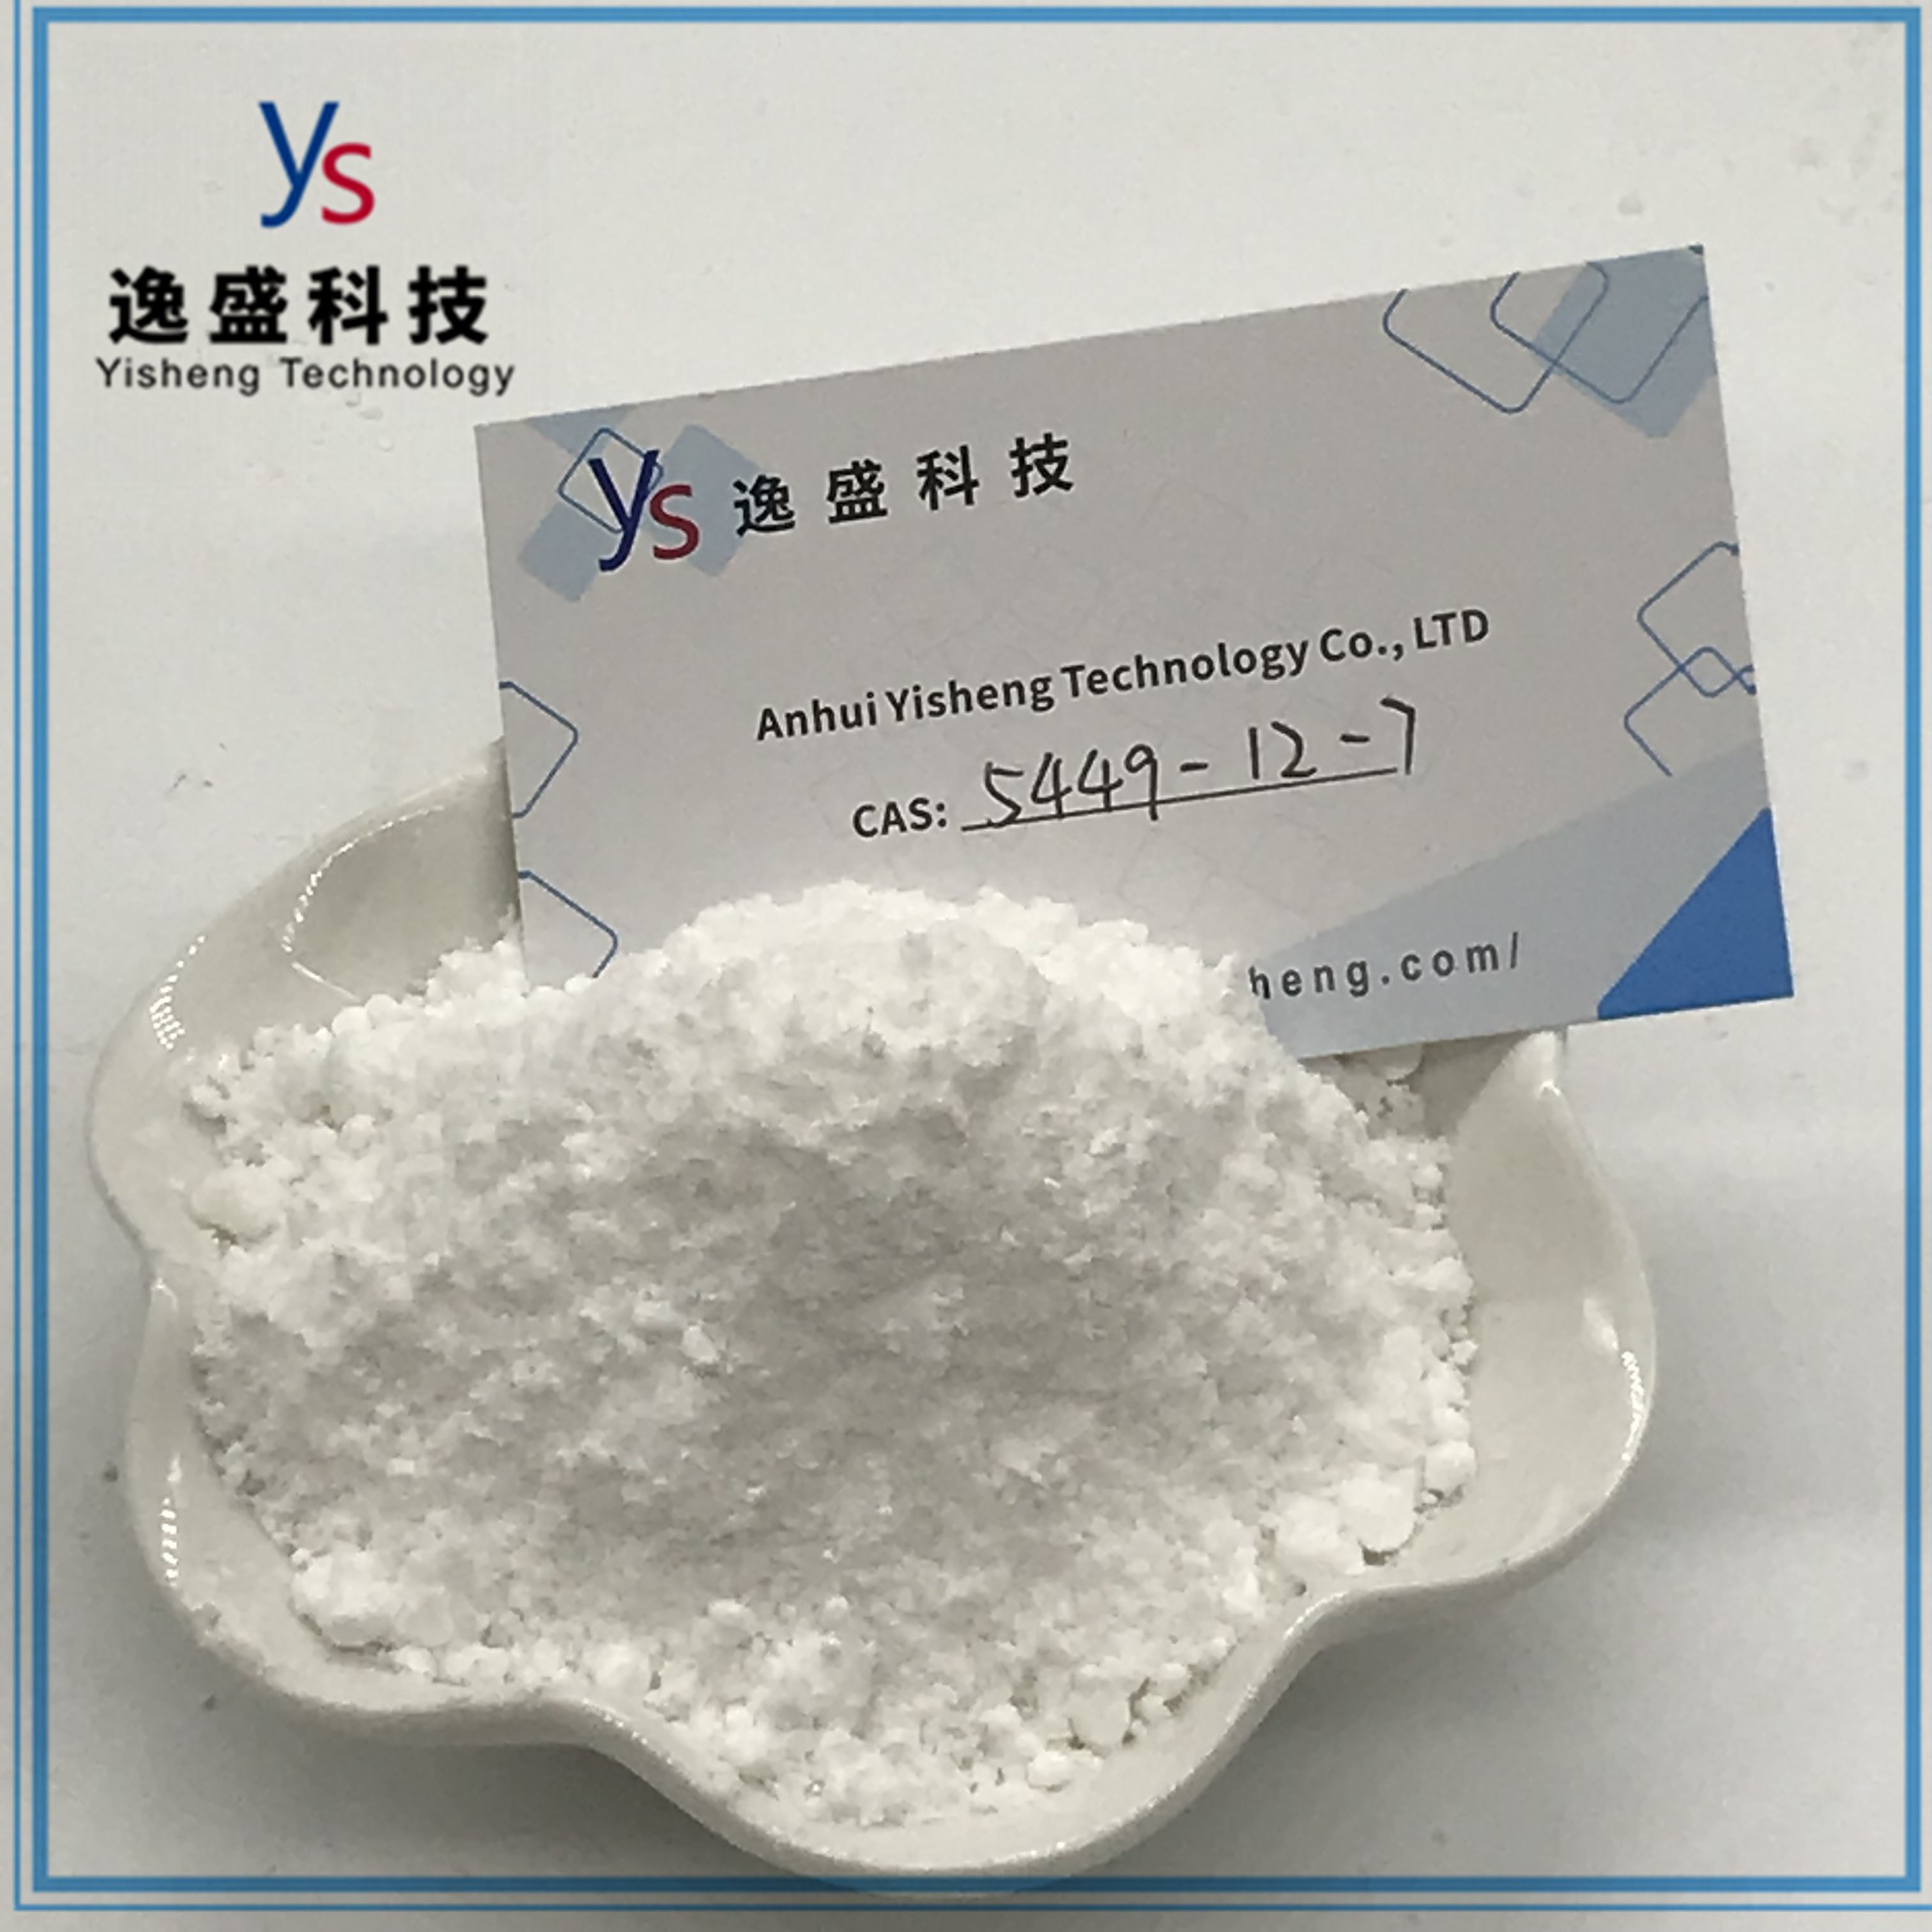 Hihg Quality CAS 5449-12-7 White Powder